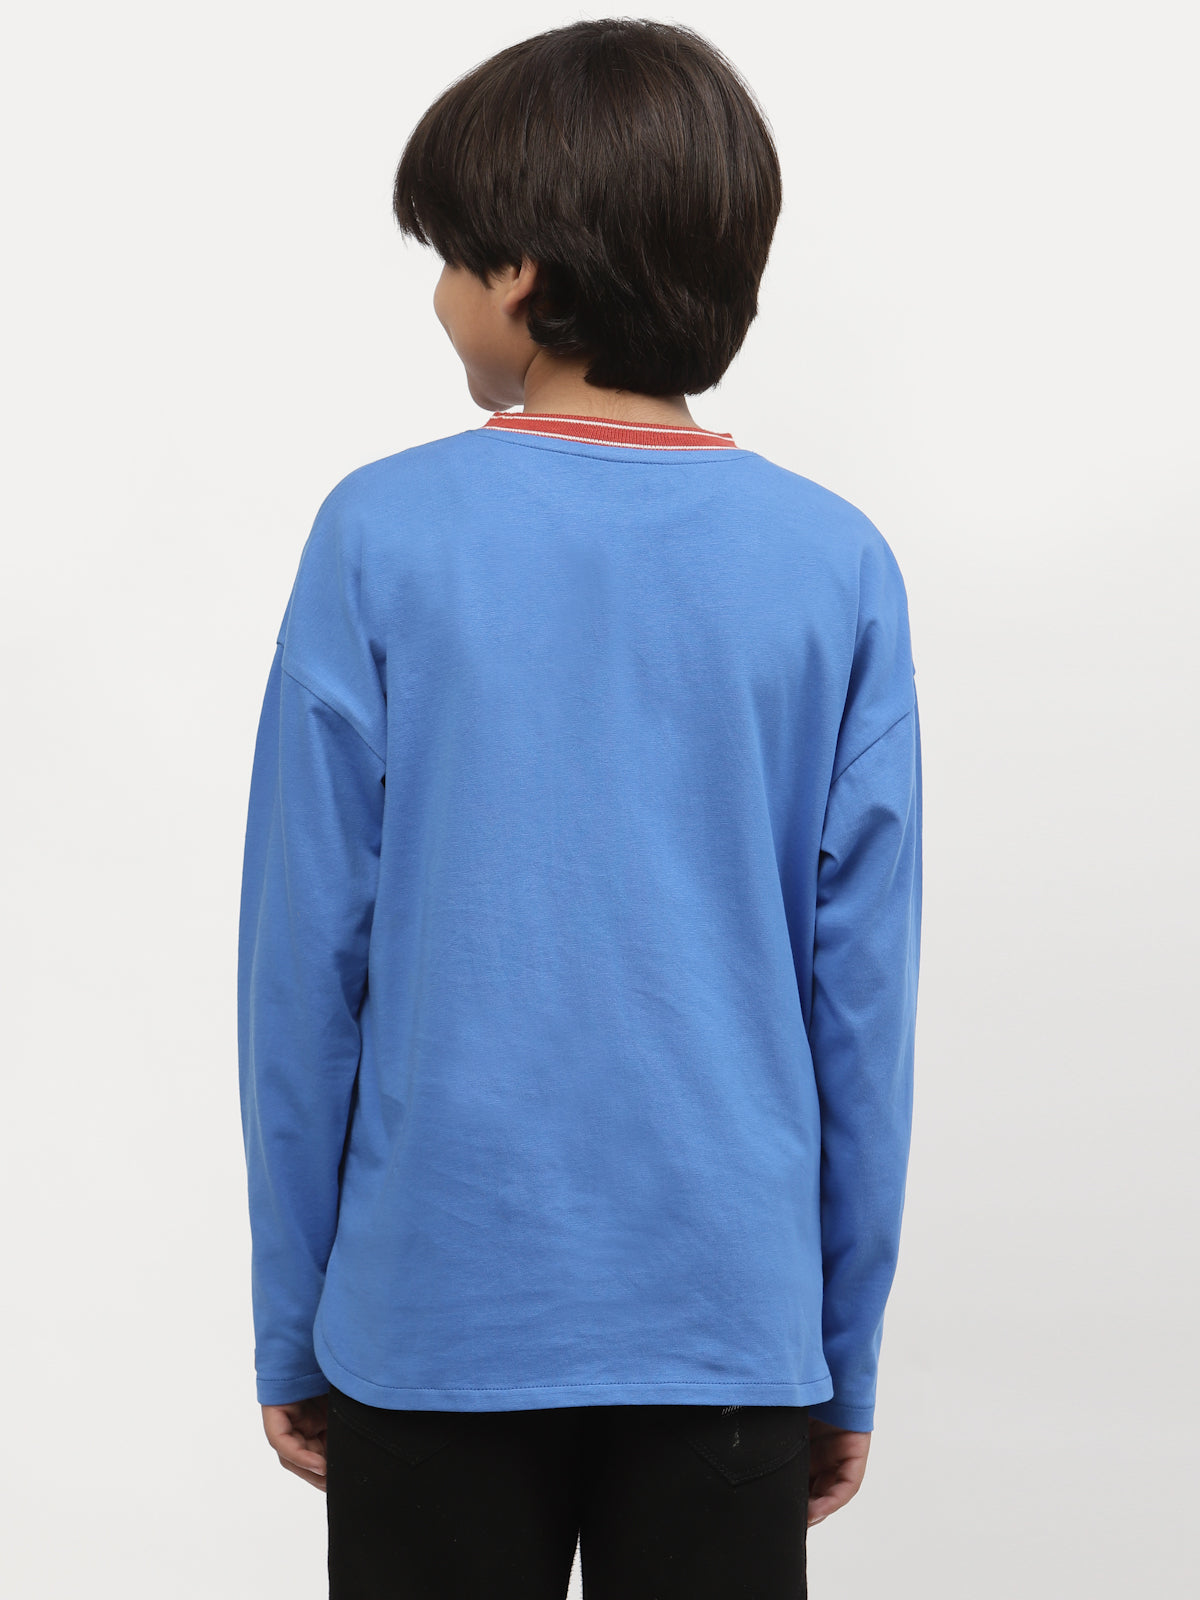 Spunkies Boys Winter Chest Pocket Printed Tshirt-Blue